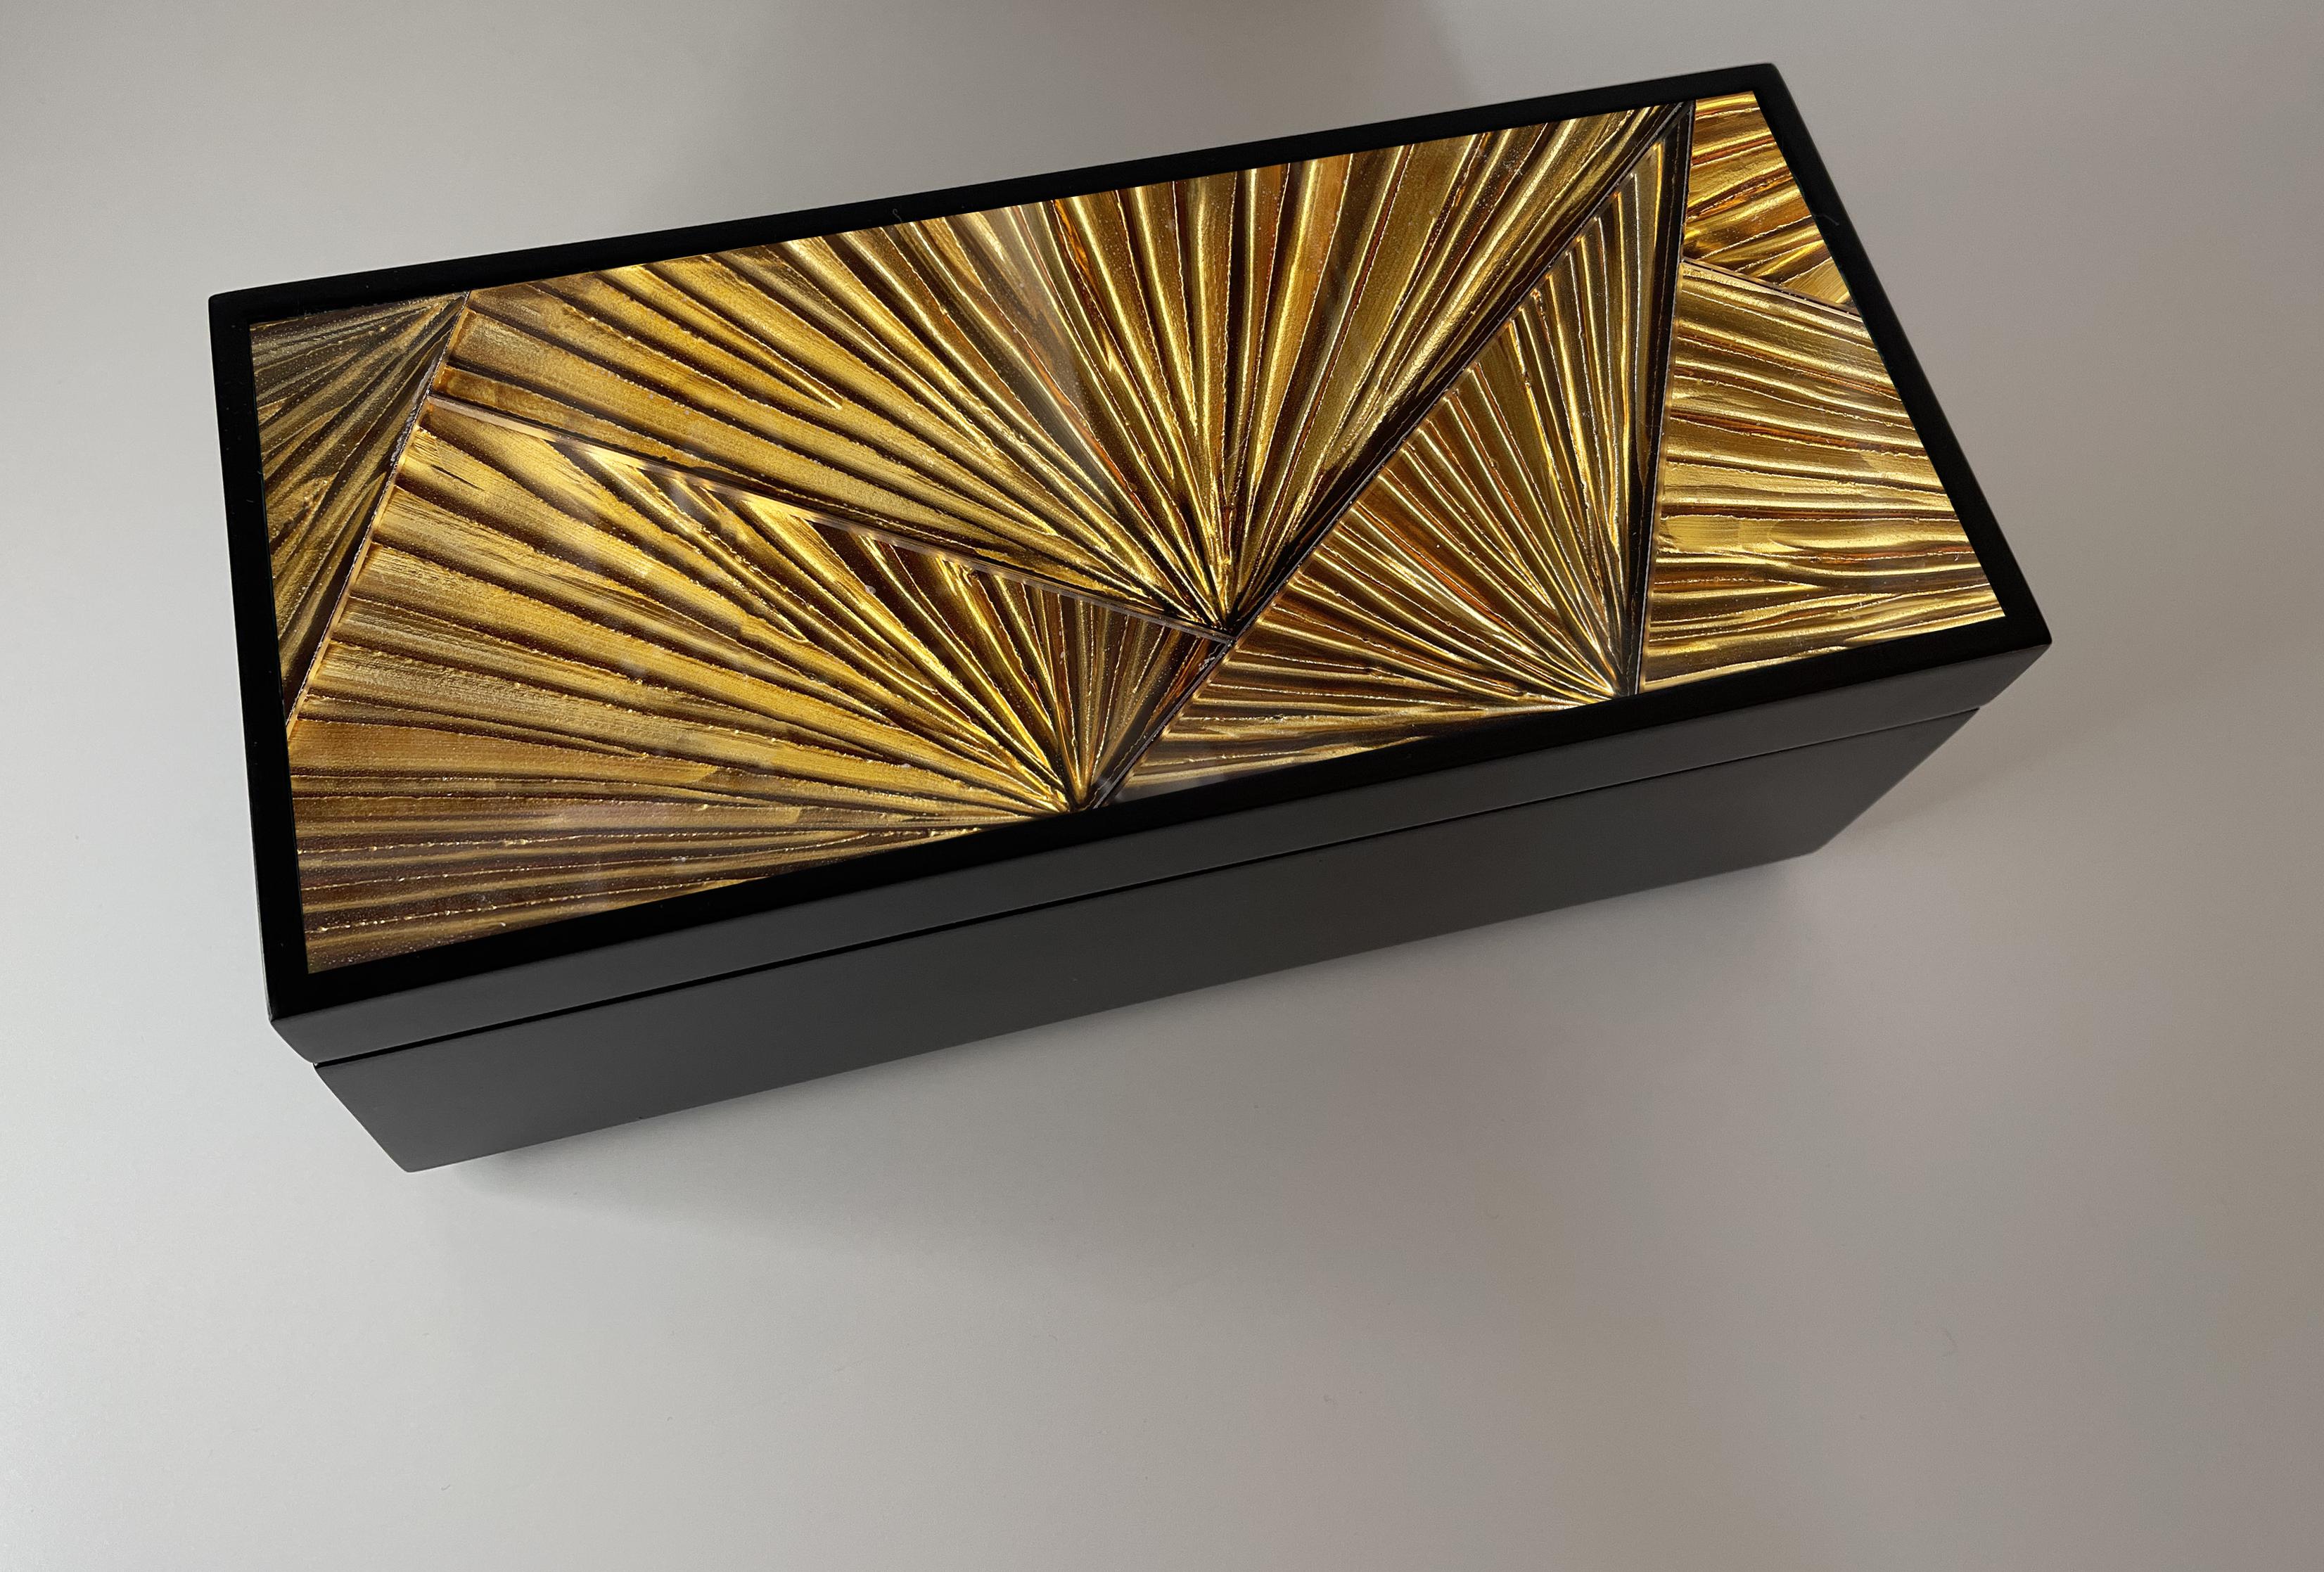 2022 Kollektion von Schmuckschatullen von Ghirò Studio.
Diese Box ist die perfekte Synthese aus zeitlosem Stil, innovativem Design und italienischer Handwerkskunst. Diese Box ist komplett aus Holz mit einer mattschwarzen Oberfläche. Der Deckel ist